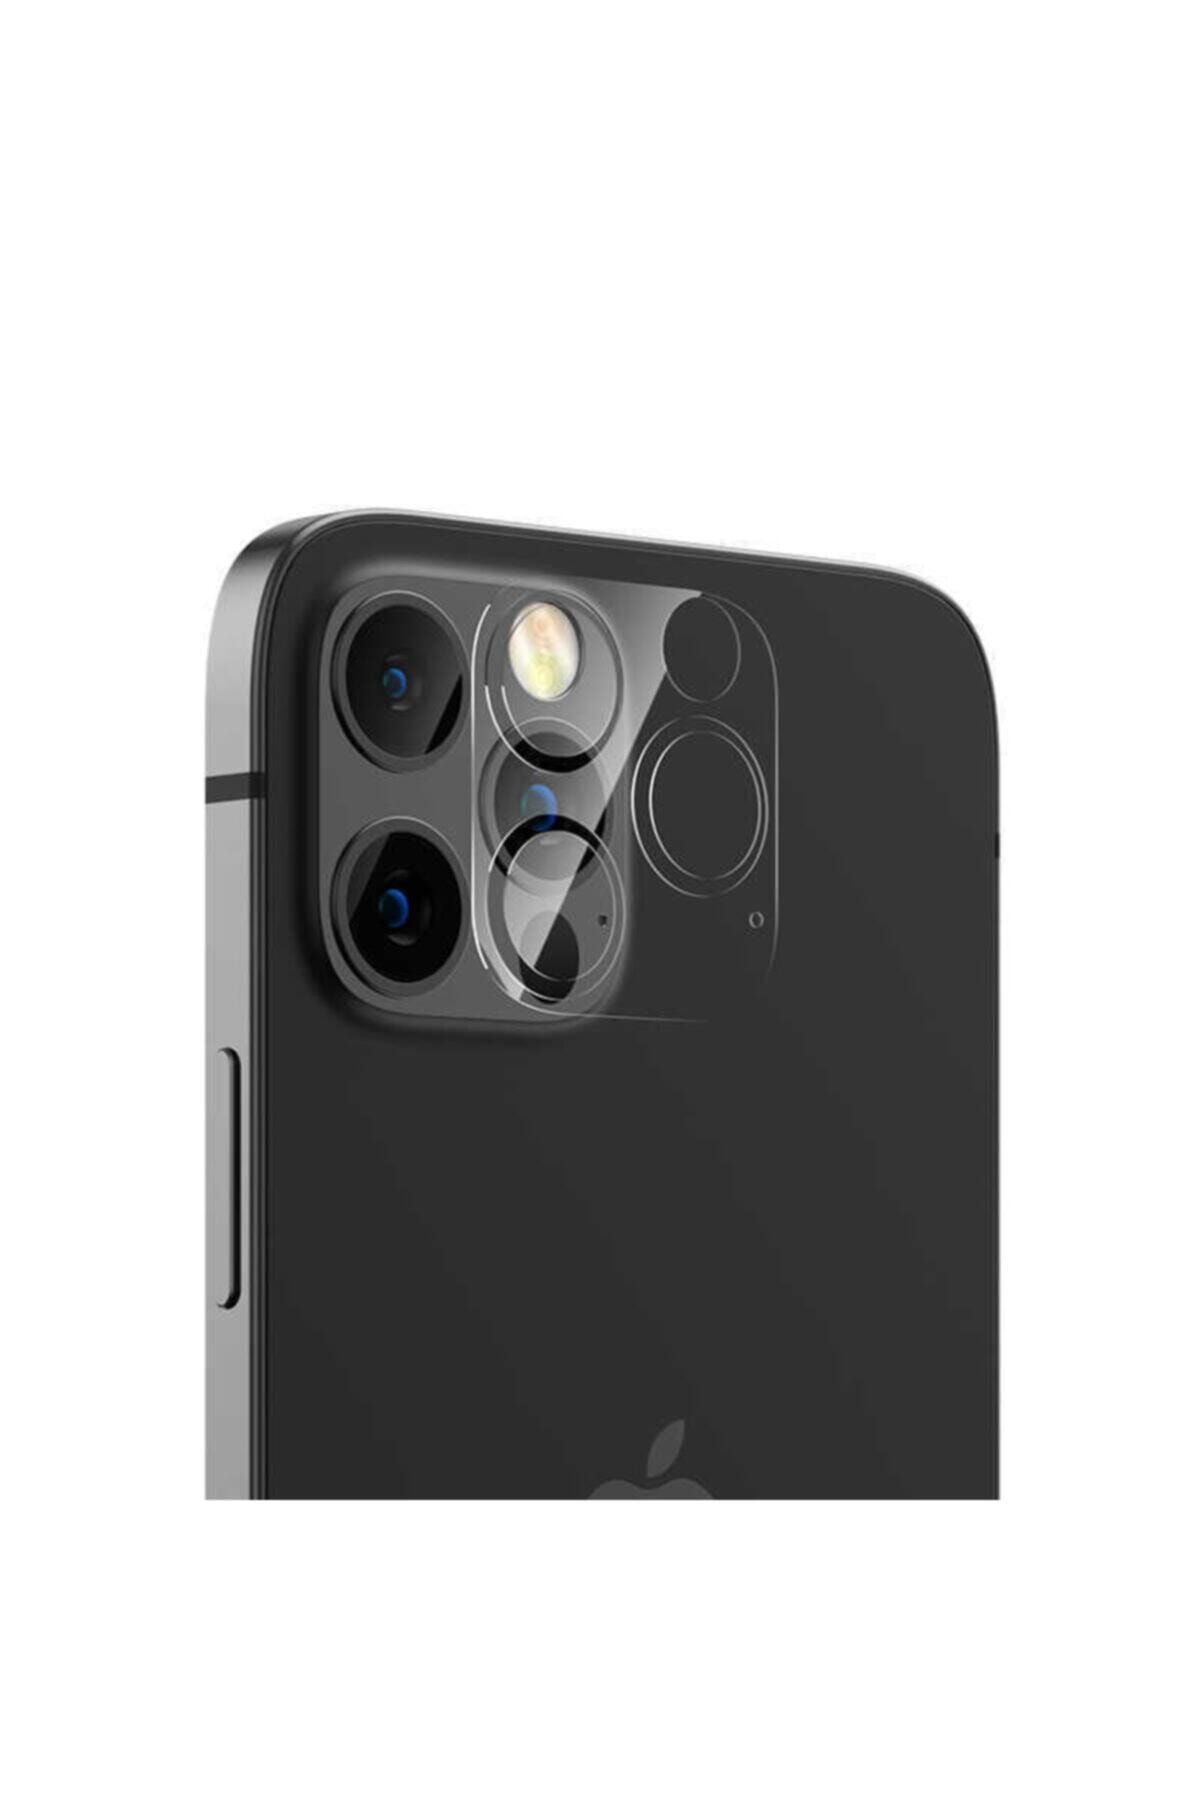 BLUPPLE Apple Iphone 12 Pro Max Soft Kamera Lens Koruma Koruyucu Film Ince Nano Cam Tam Koruma